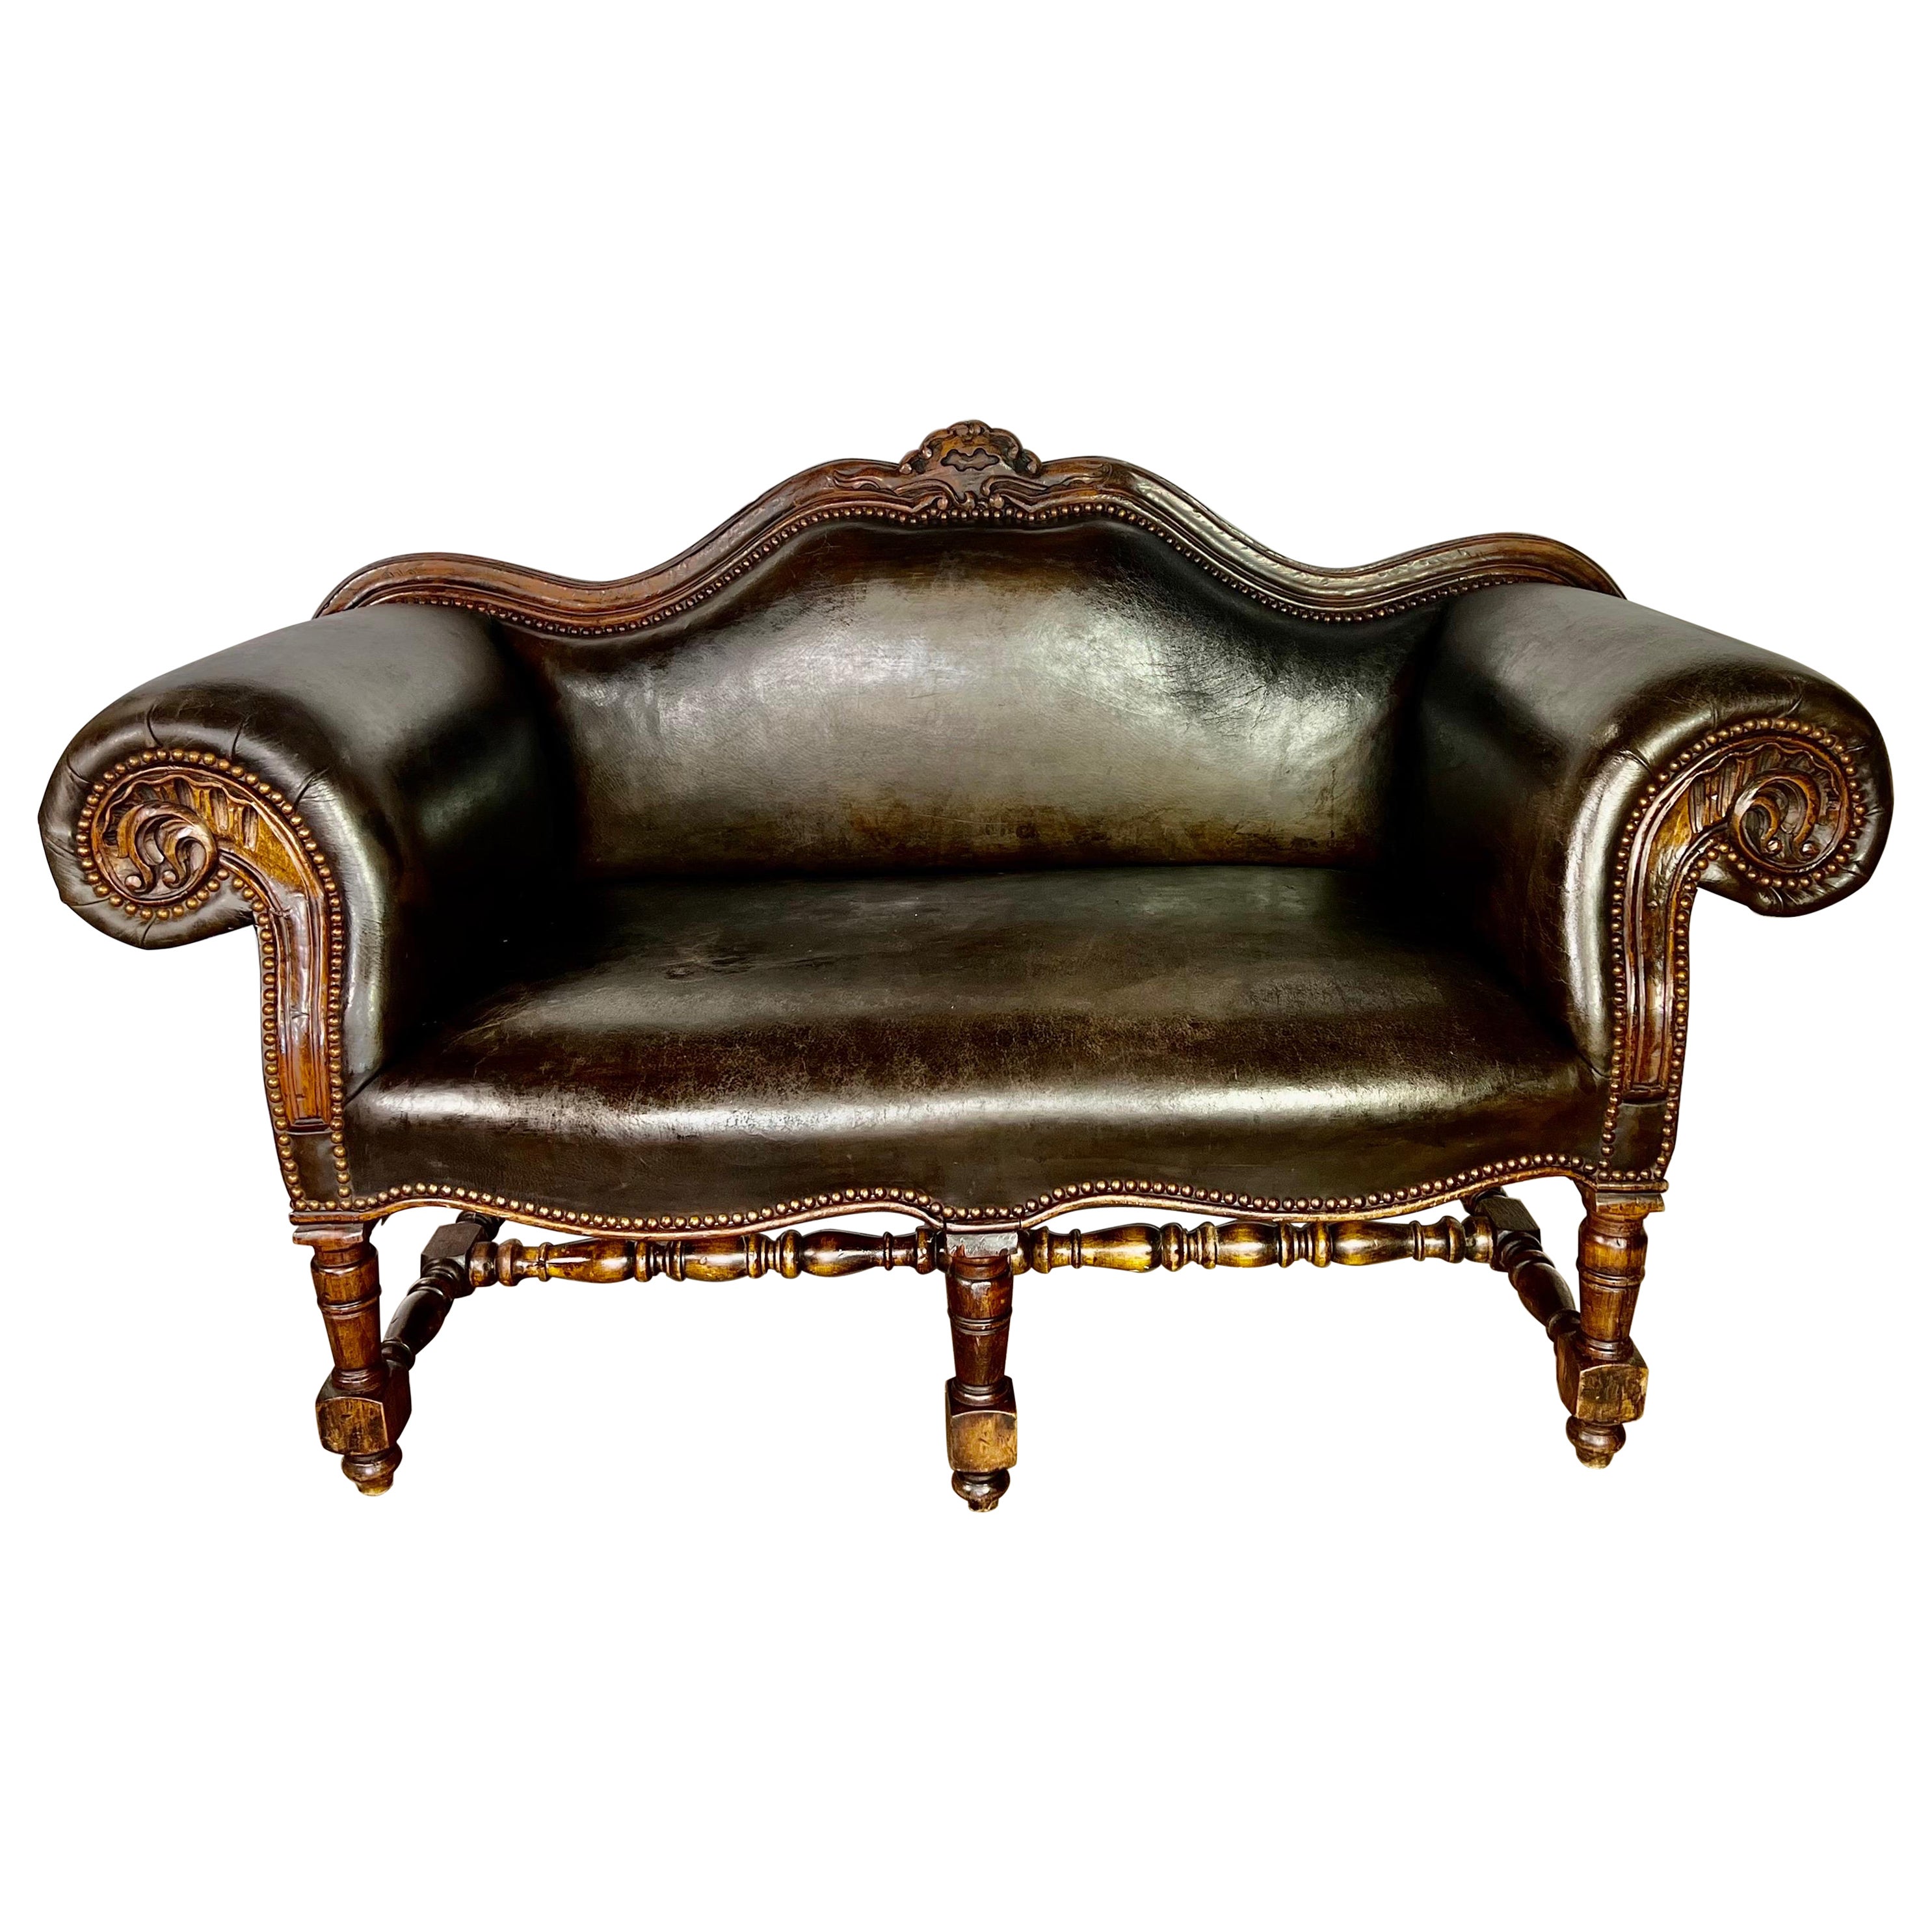 1900’s English Leather Tufted Sofa